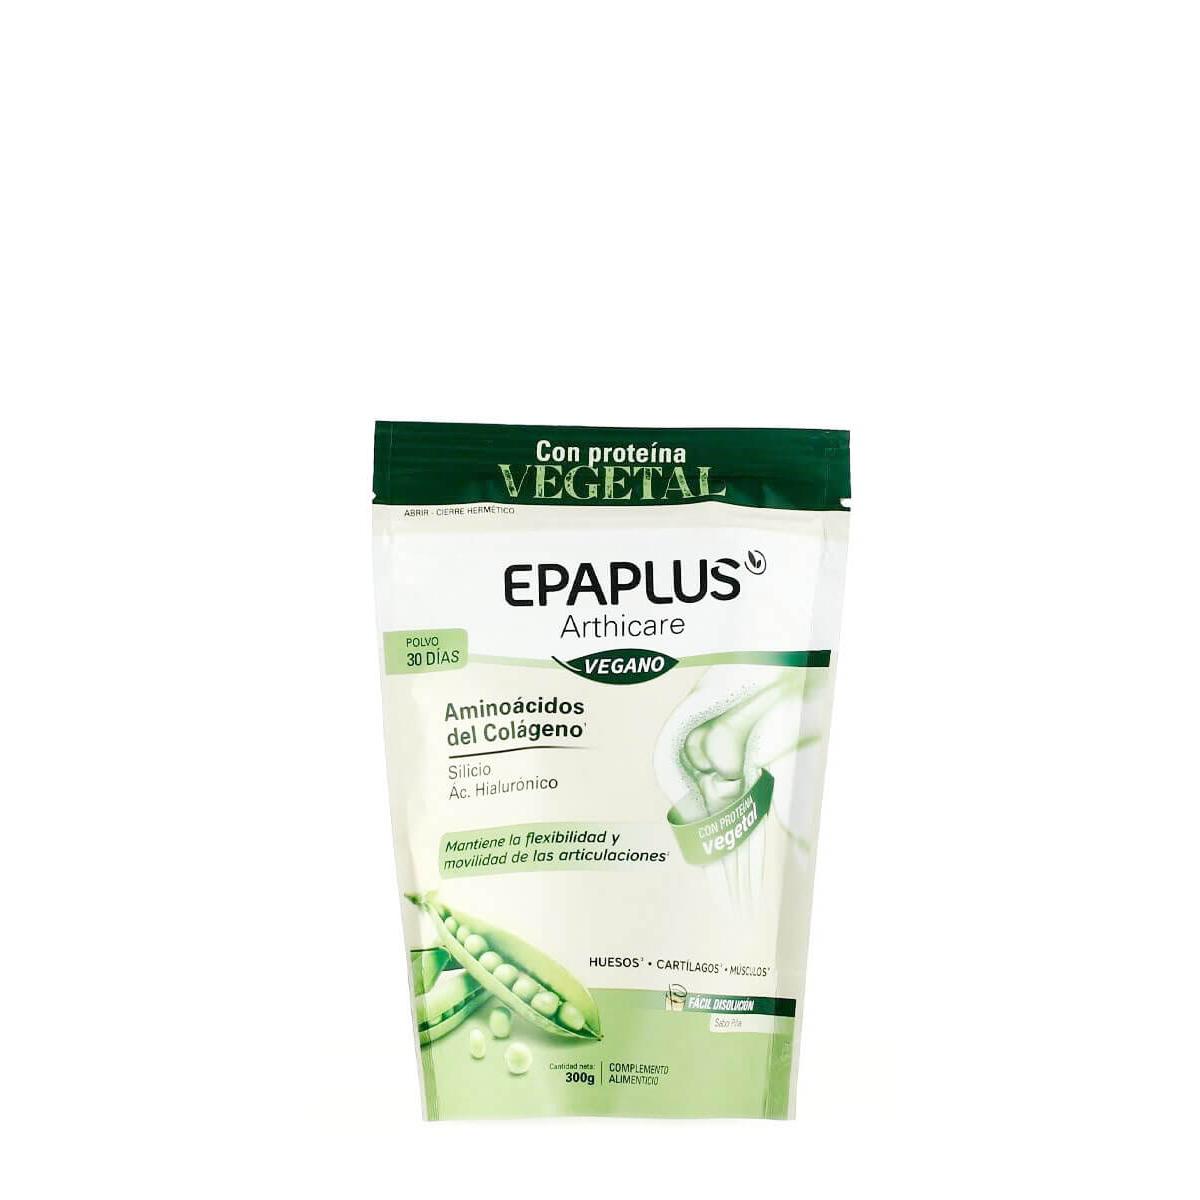 Epaplus - Epaplus arthicare vegano sabor piña 300 gr